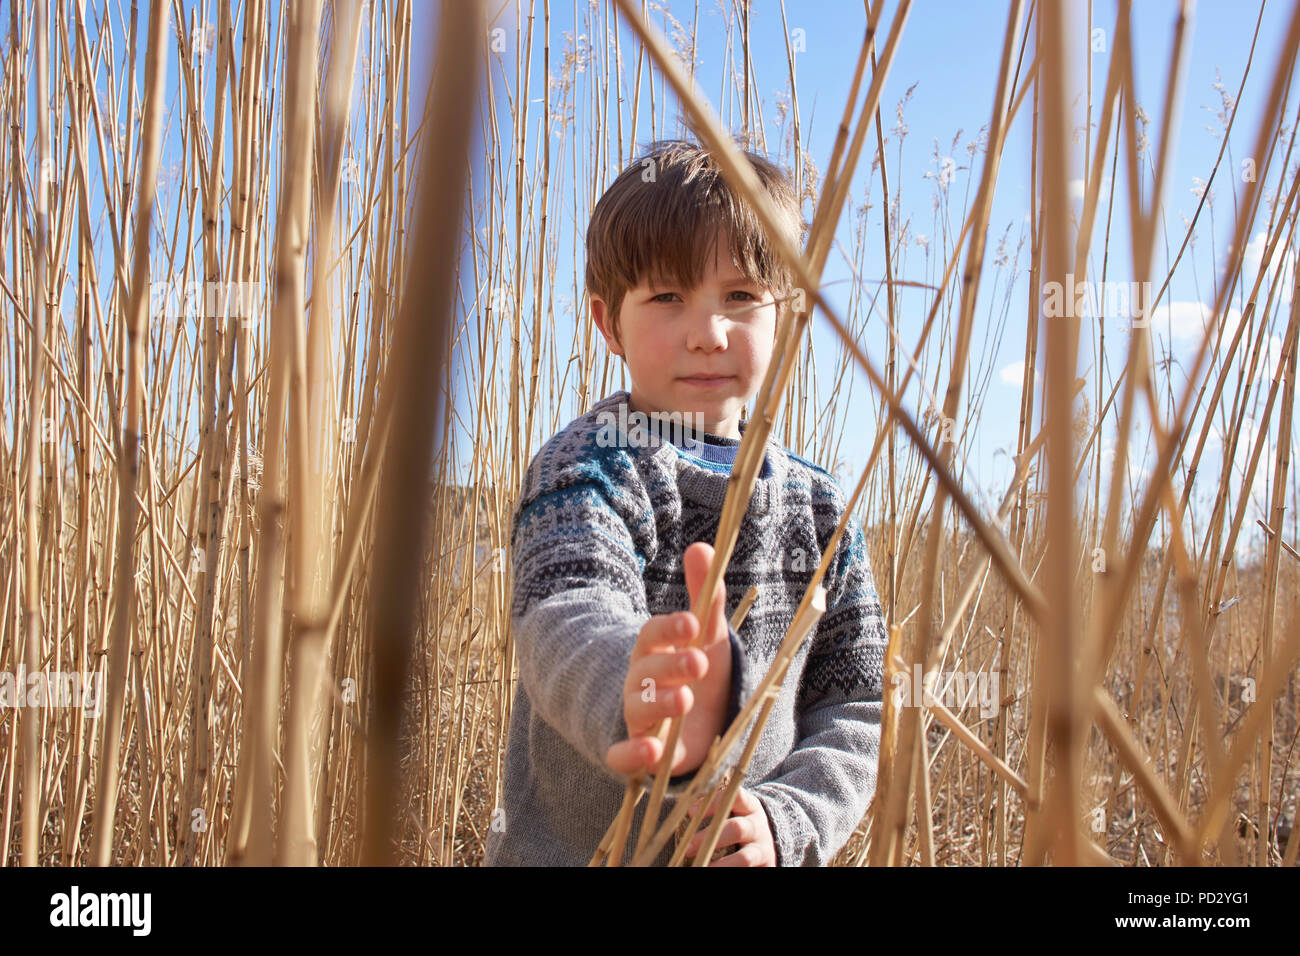 Boy amongst reeds, portrait Stock Photo